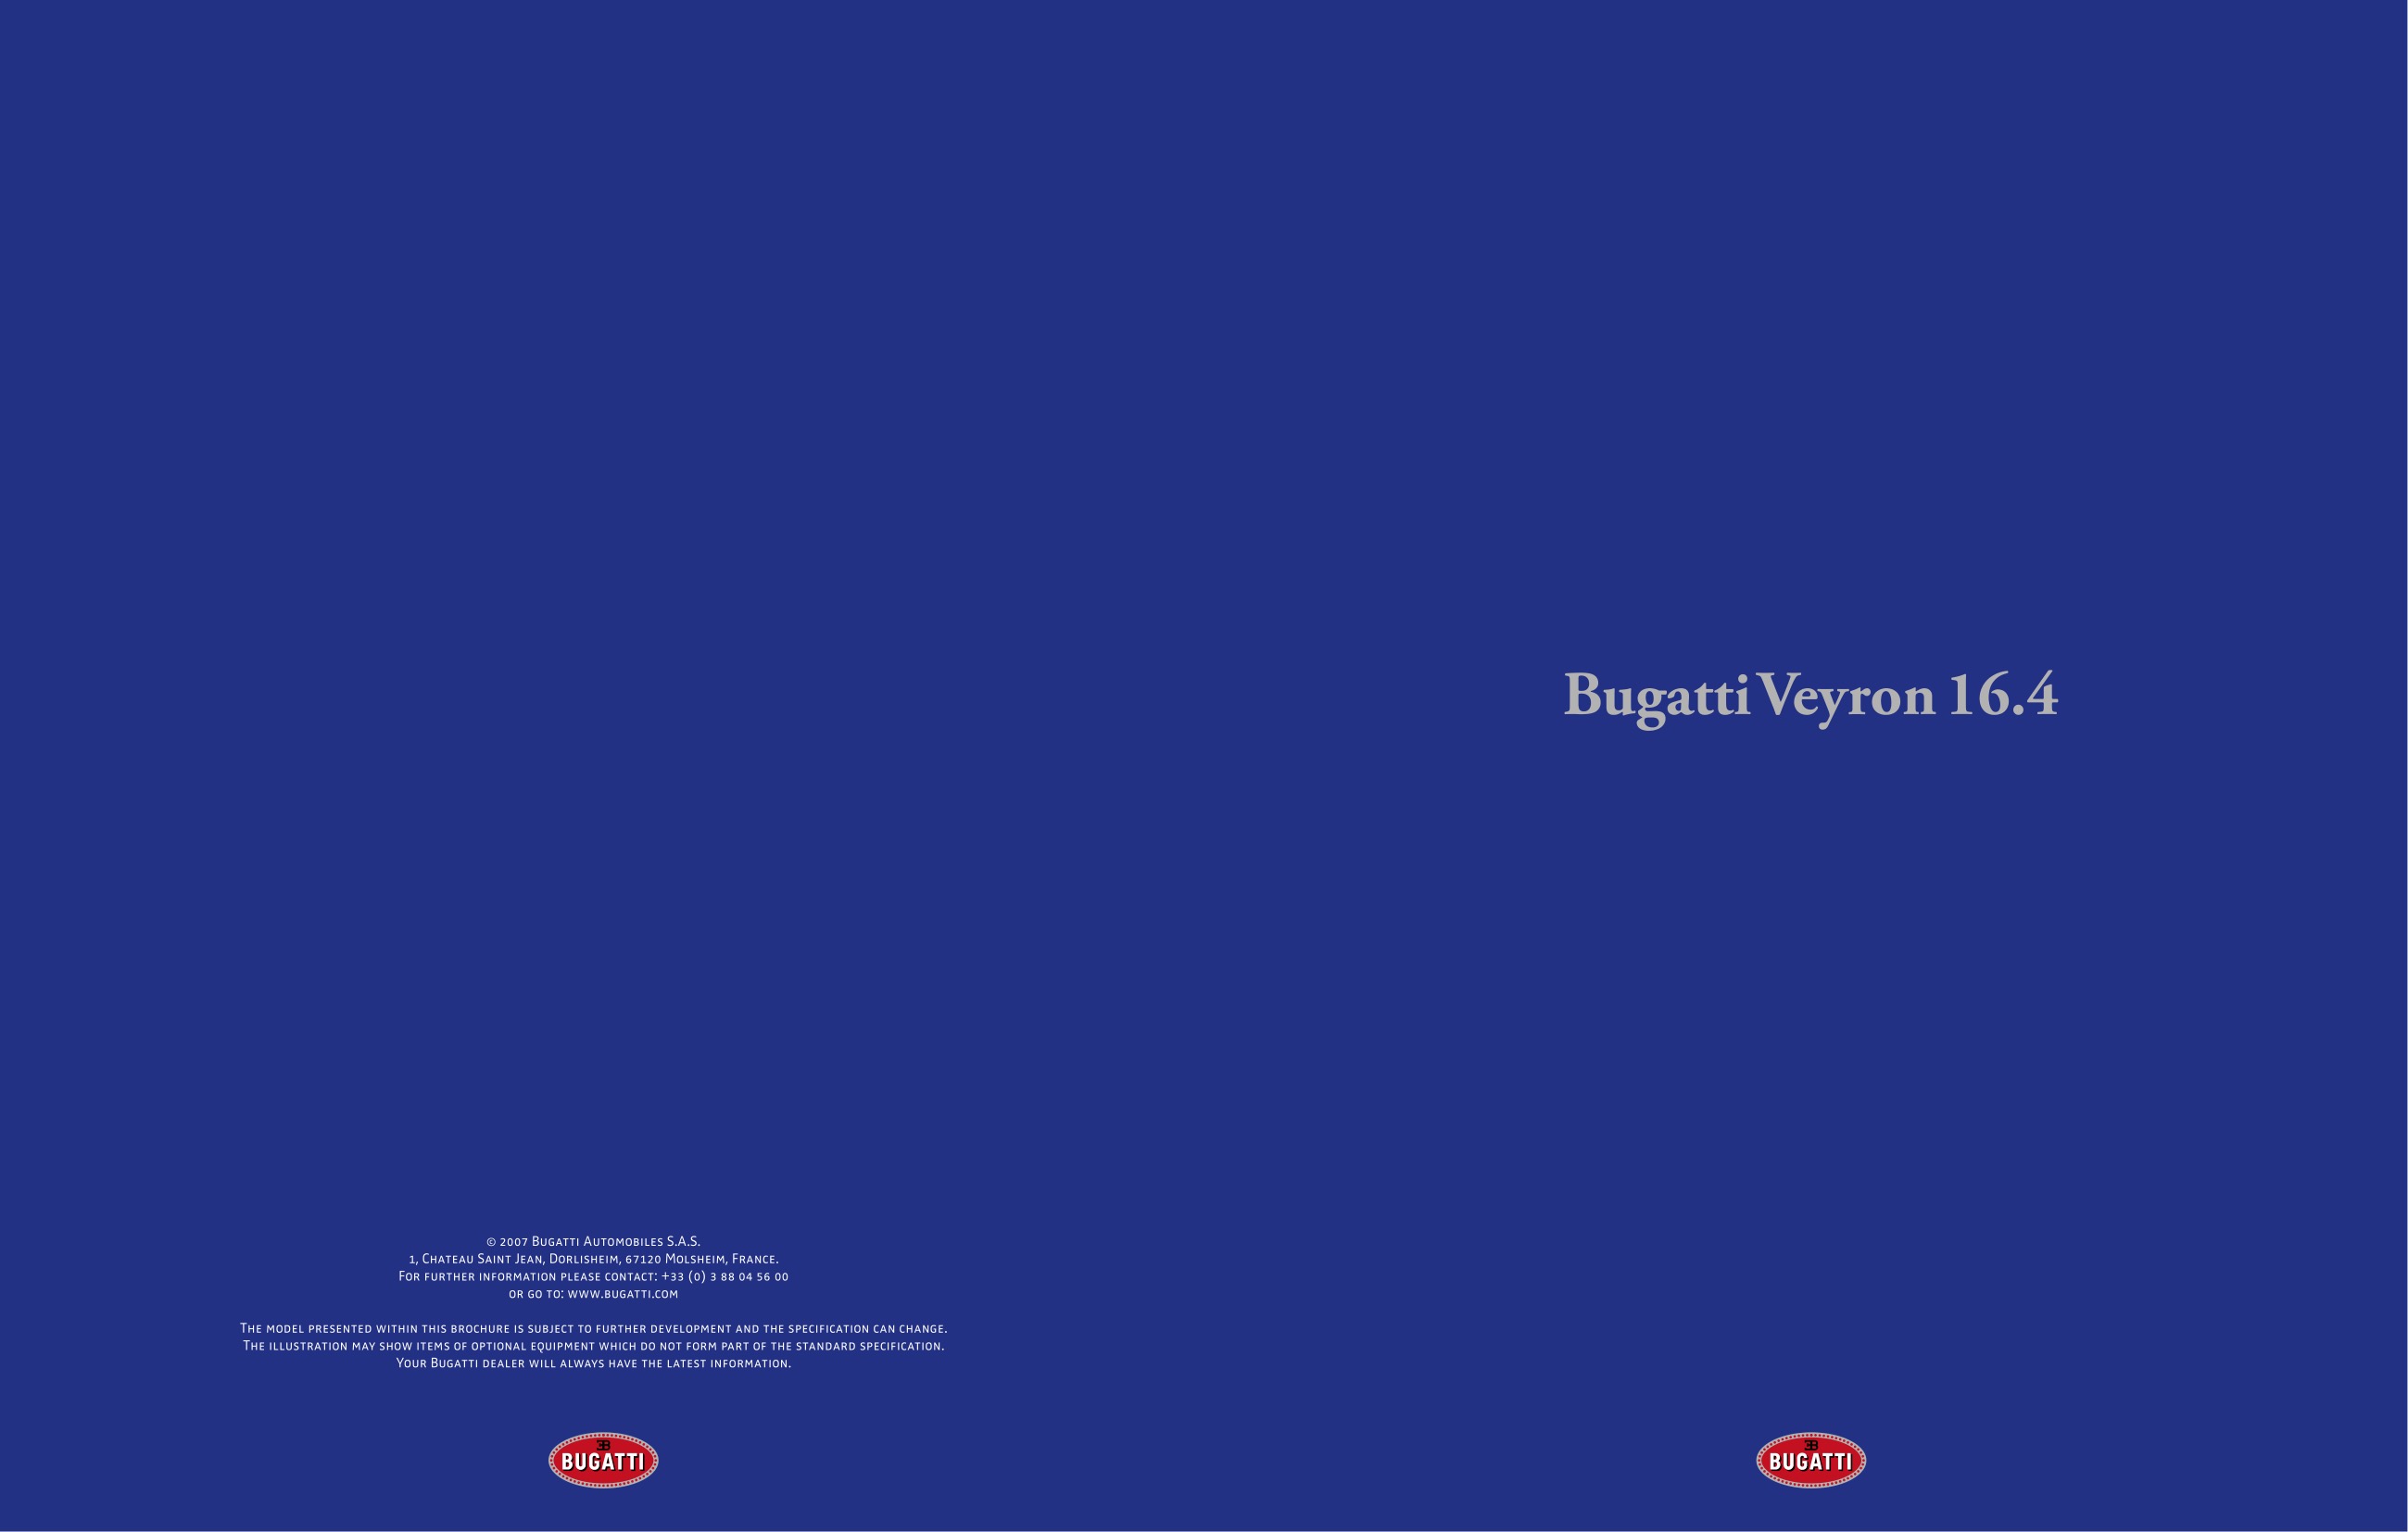 2008 Bugatti Veyron 16.4 Brochure